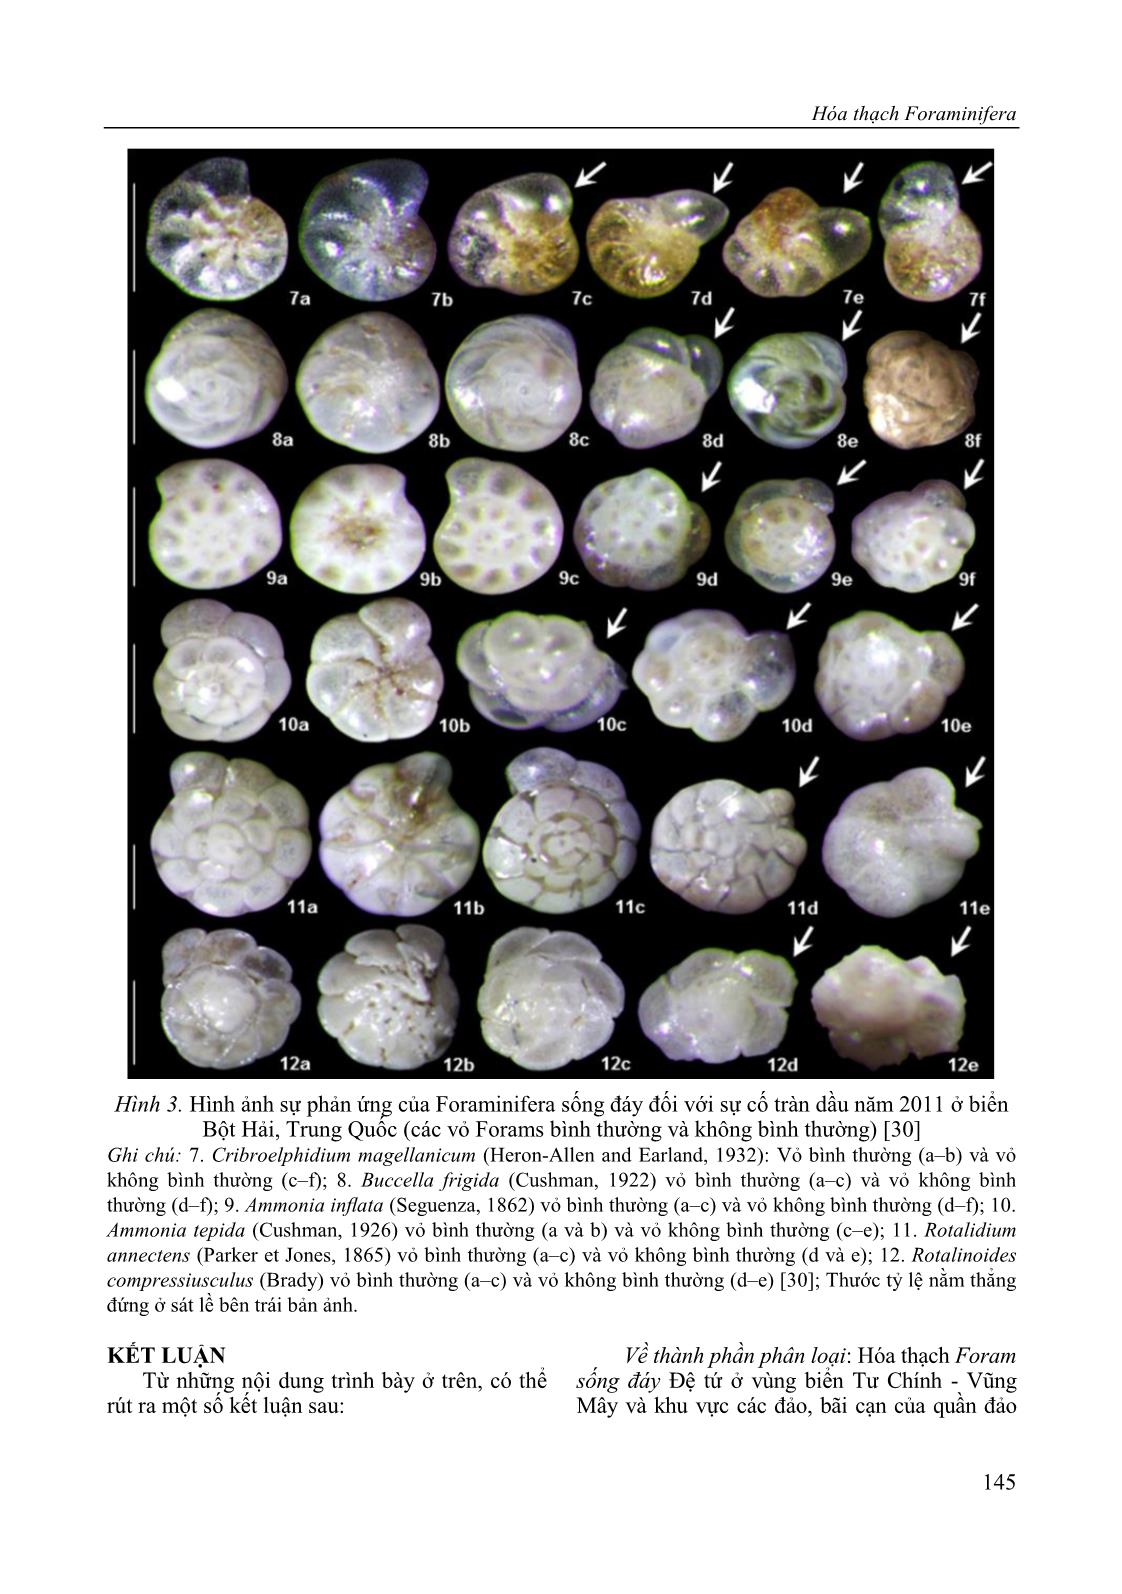 Hóa thạch Foraminifera (Trùng lỗ) sống đáy Đệ tứ ở vùng biển Tư Chính - Vũng Mây (thềm lục địa Việt Nam) và khu vực các đảo, bãi cạn thuộc quần đảo Trường Sa, Việt Nam và ý nghĩa của chúng trang 9